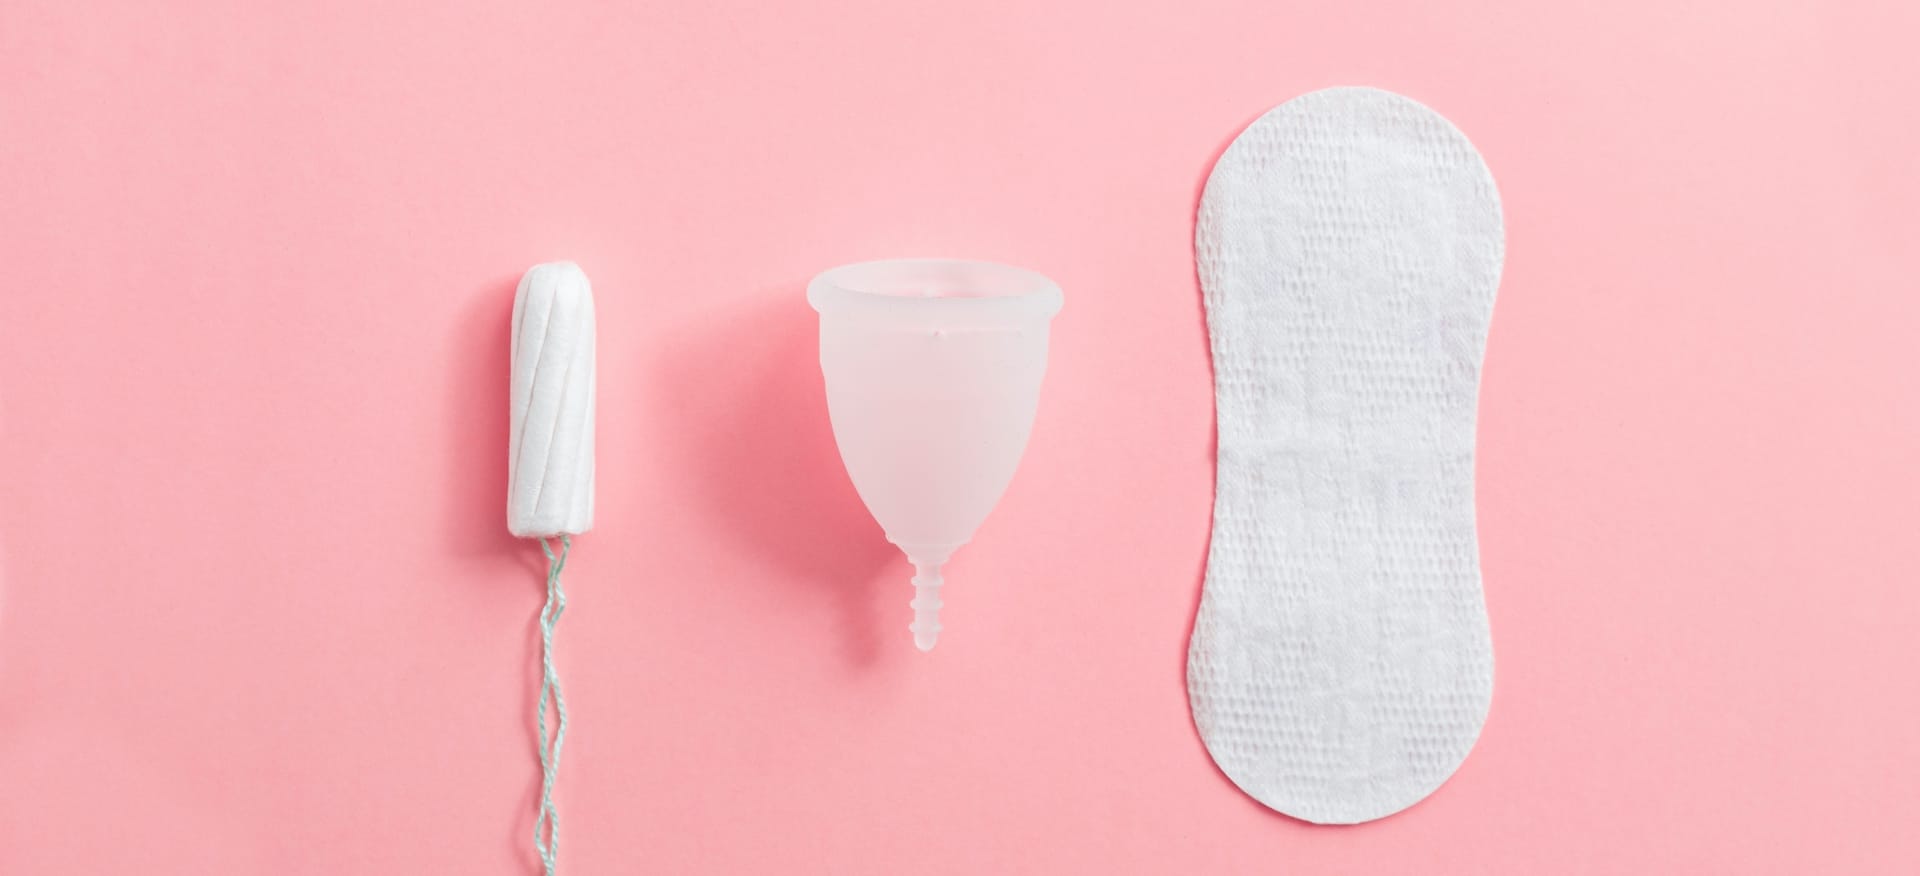 Illustration du syndrôme du choc toxique, tampon et cup menstruelle